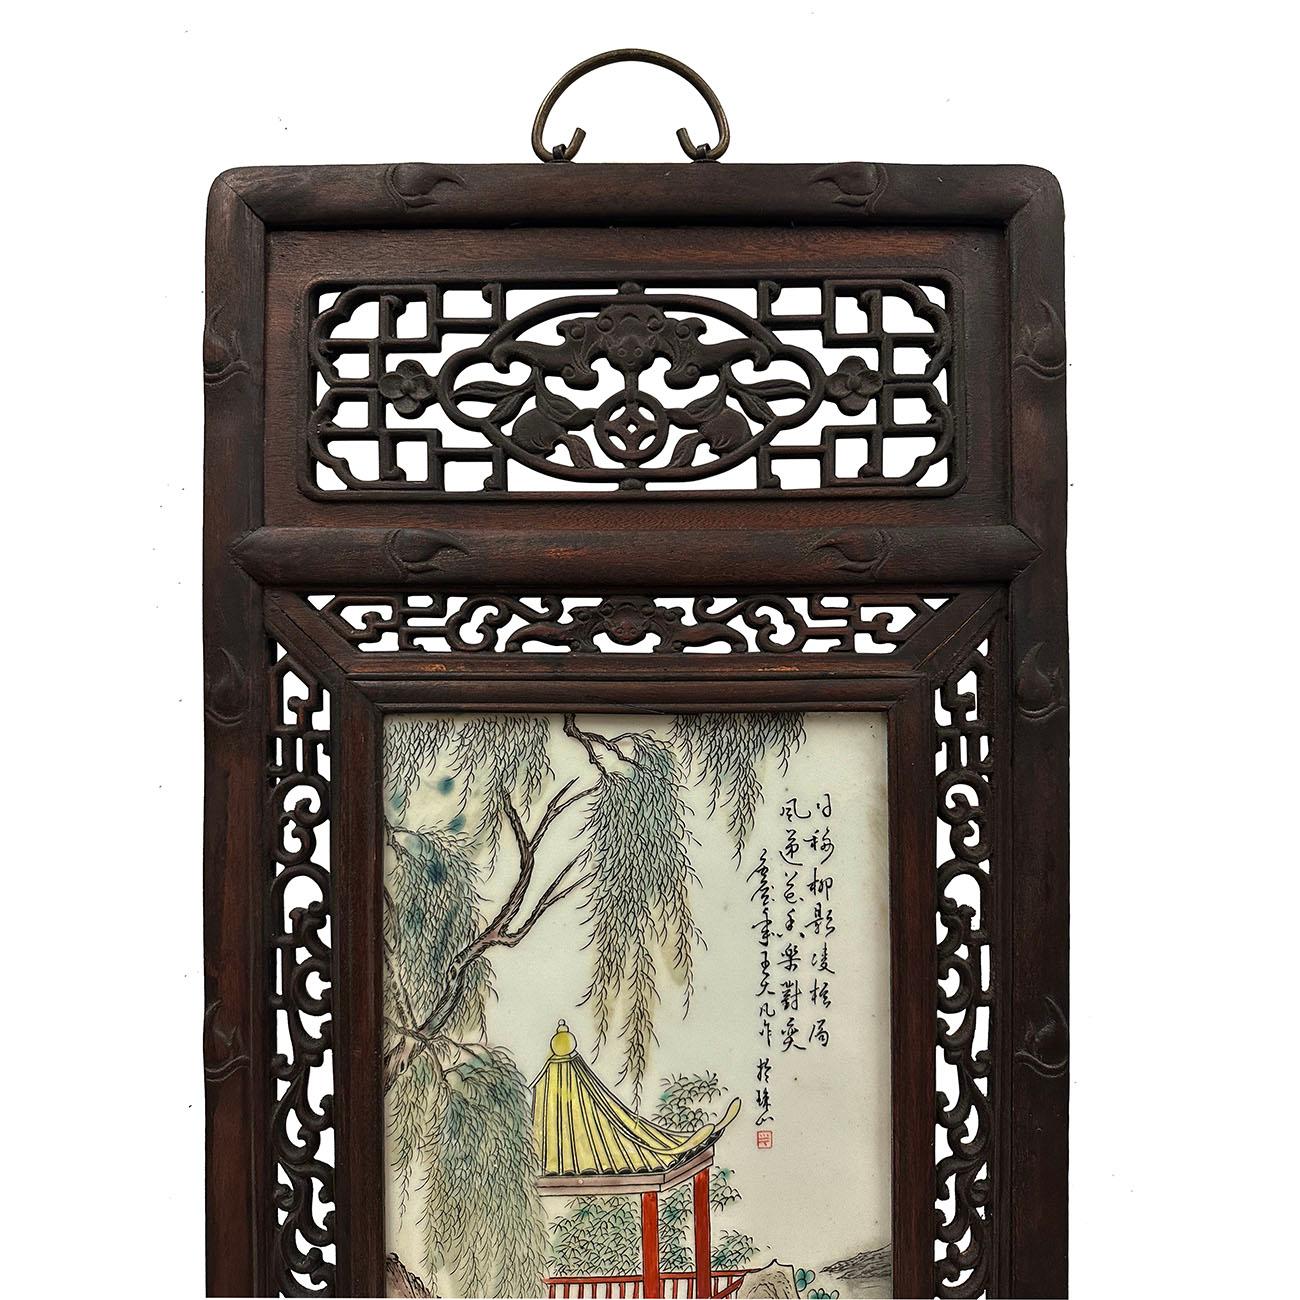 Il s'agit d'un ensemble de 2 panneaux en porcelaine peinte ancienne chinoise. Ils ont été fabriqués et peints à la main. Il présente un magnifique cadre en bois de rose traditionnel chinois sculpté et détaillé, avec des fourchettes chinoises peintes